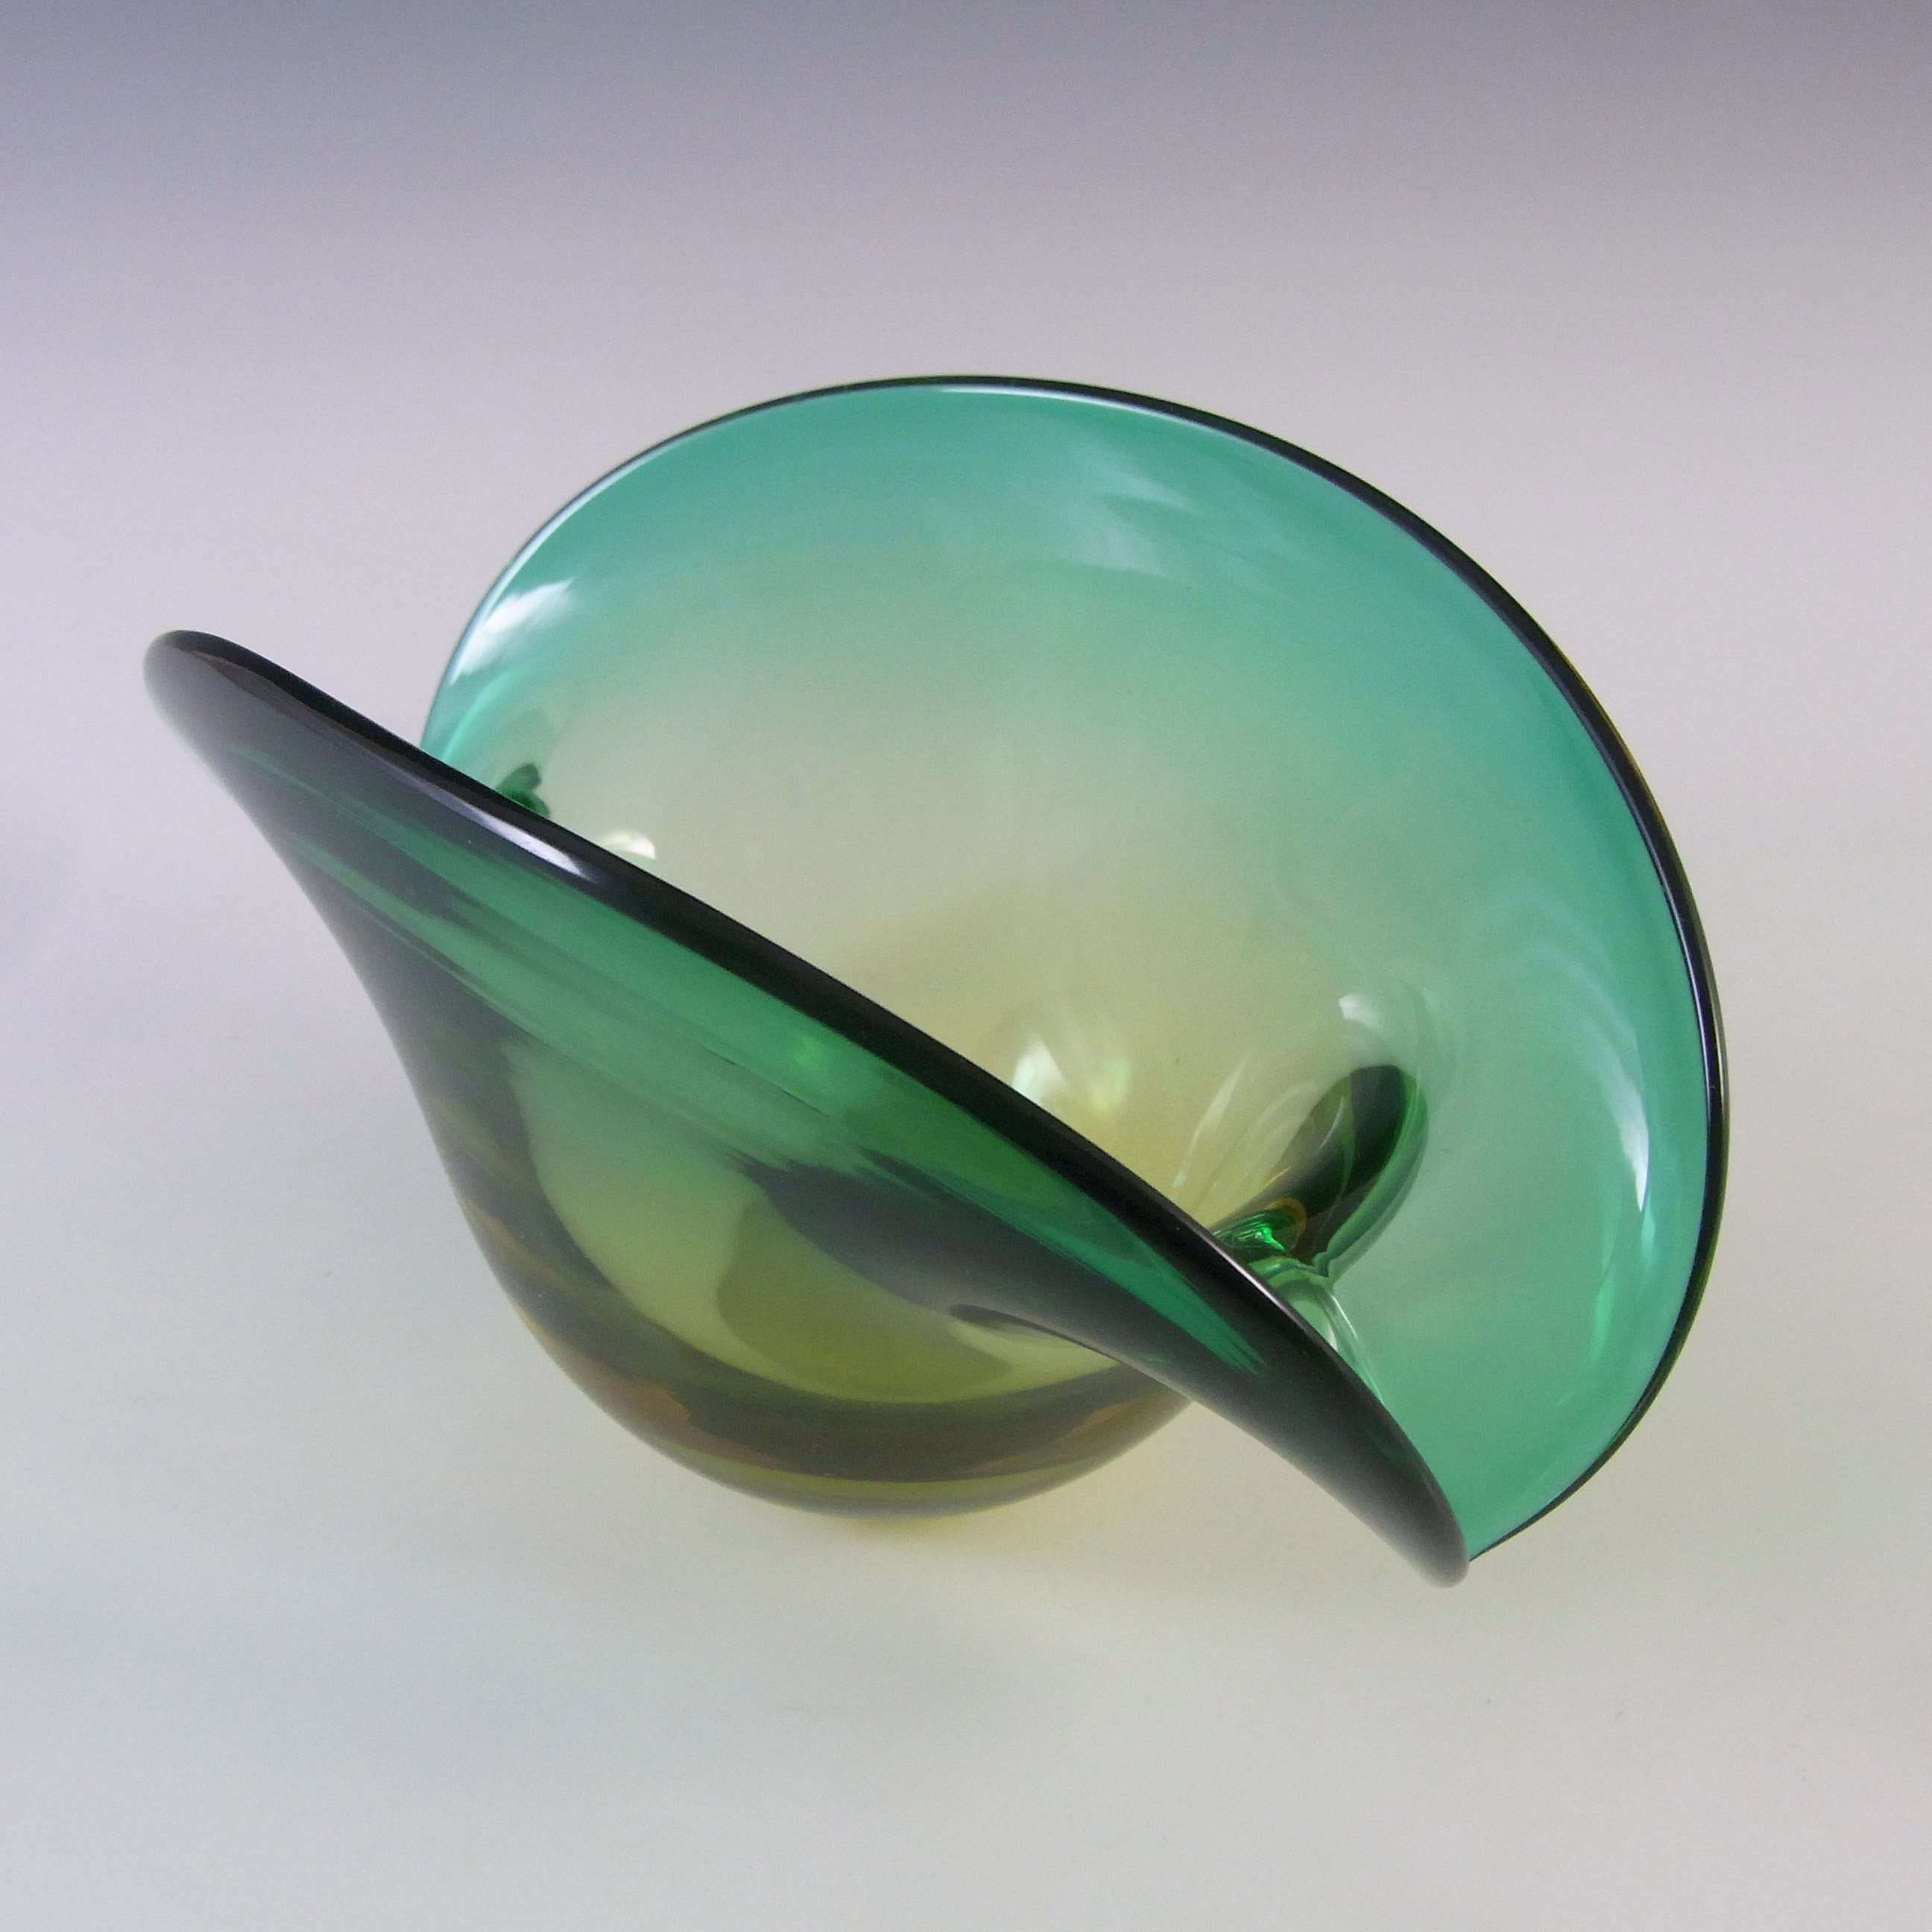 Seguso Dalla Venezia Murano Green Glass Clam Bowl/Vase - Click Image to Close